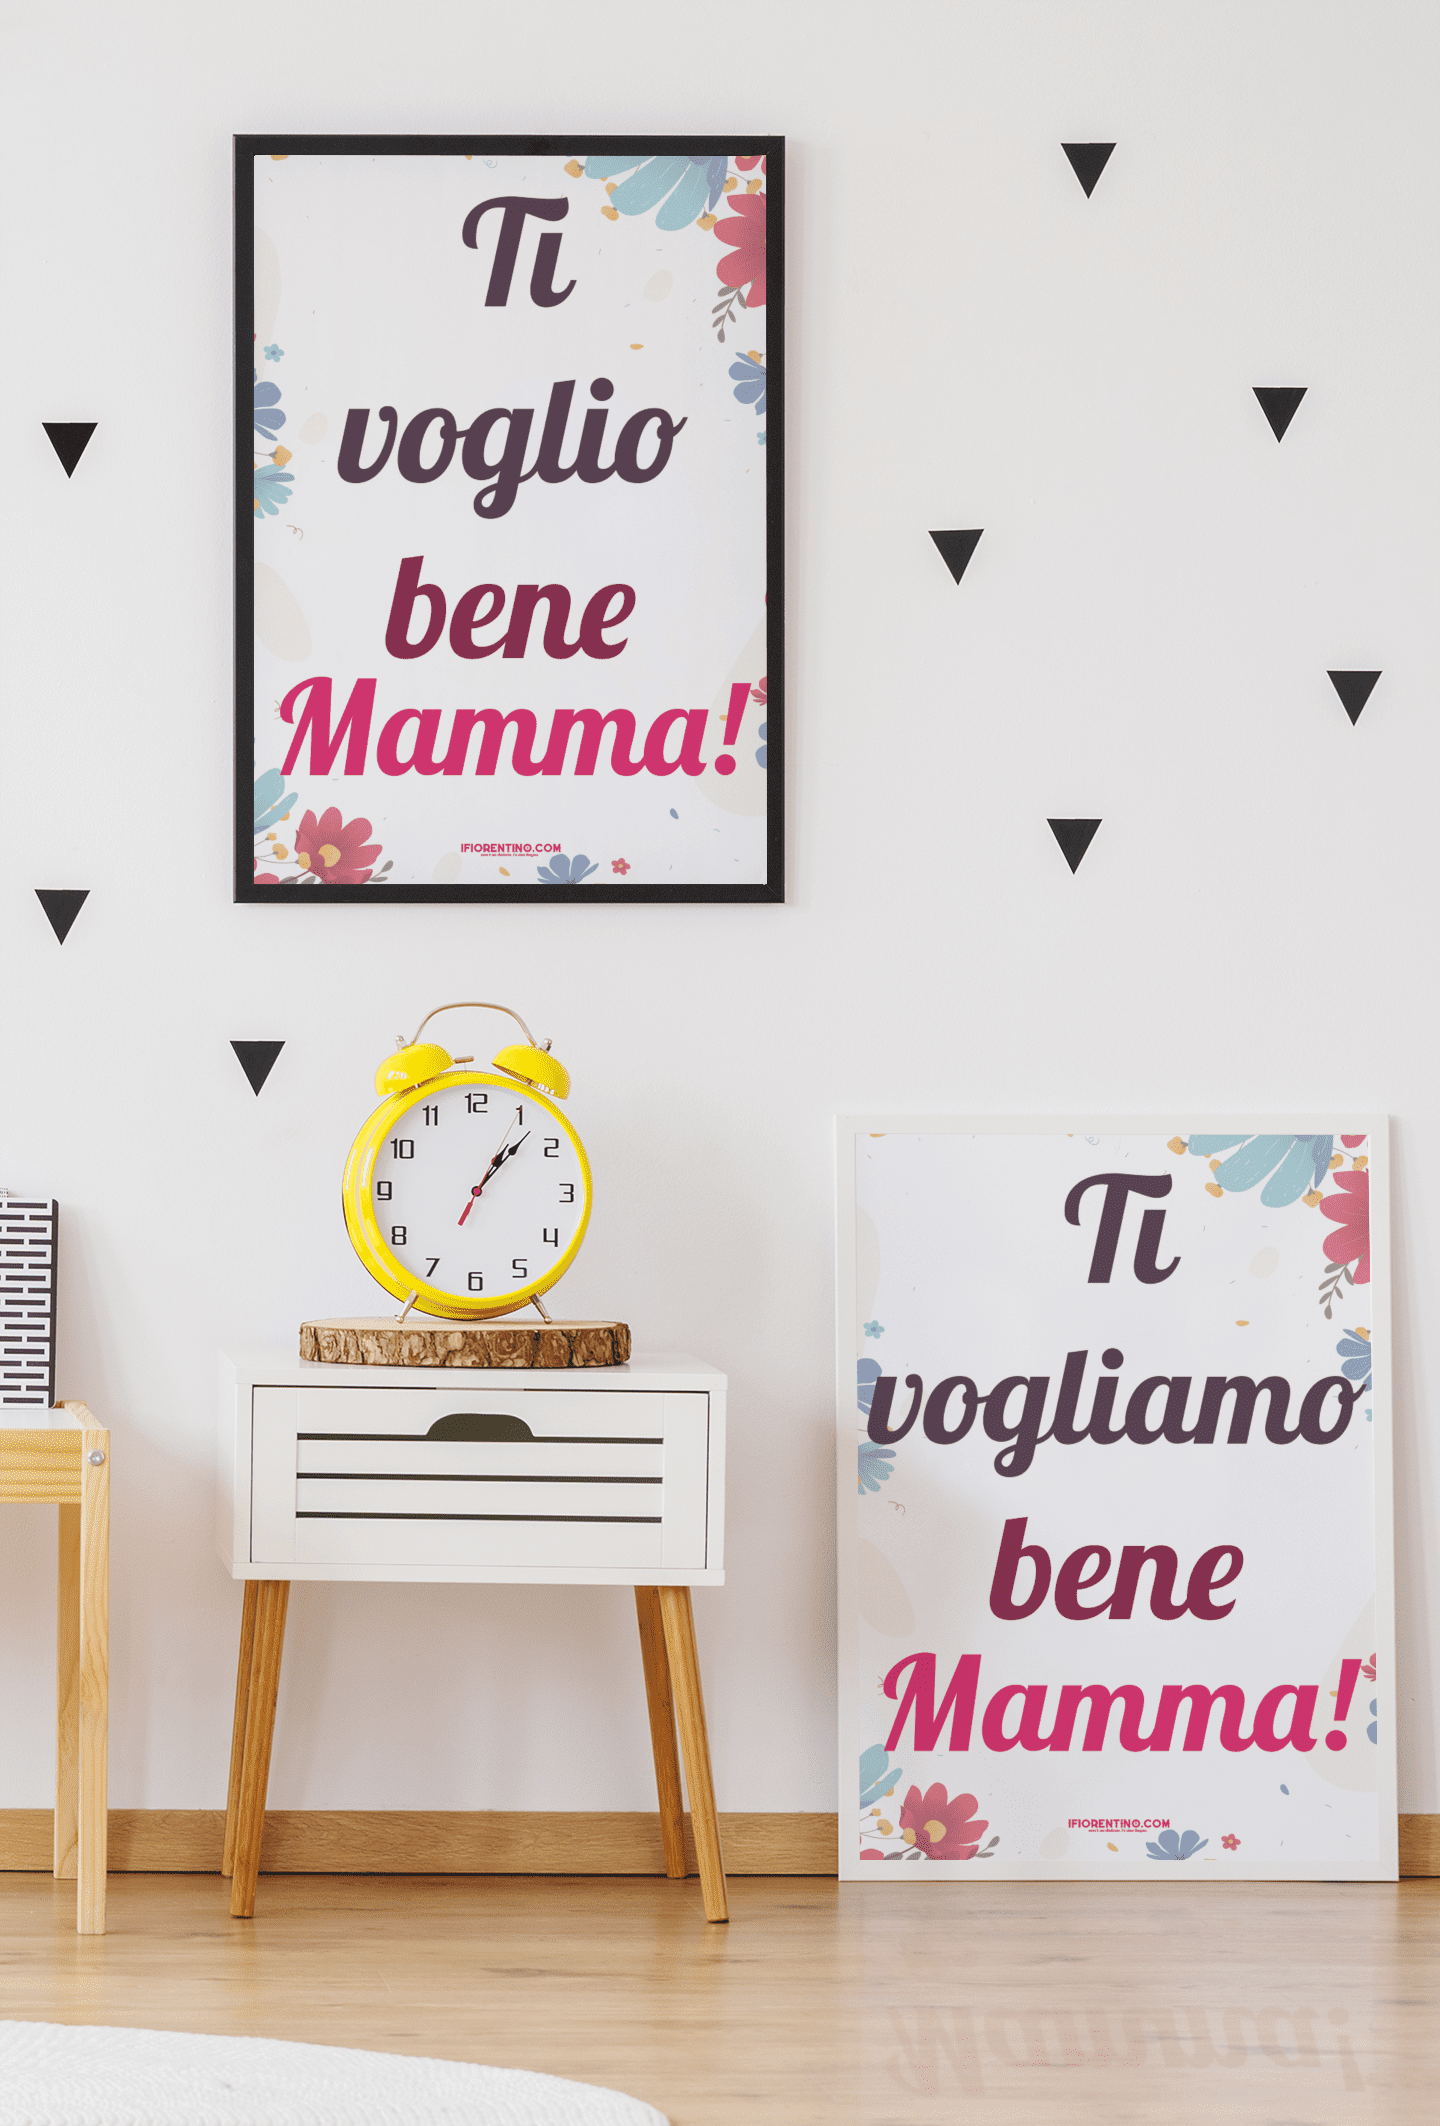 TI VOGLIO / VOGLIAMO BENE MAMMA! Fantasia floreale - poster fiorentini - poster firenze - regalo fiorentino - fiorentino  - foppeddittelo